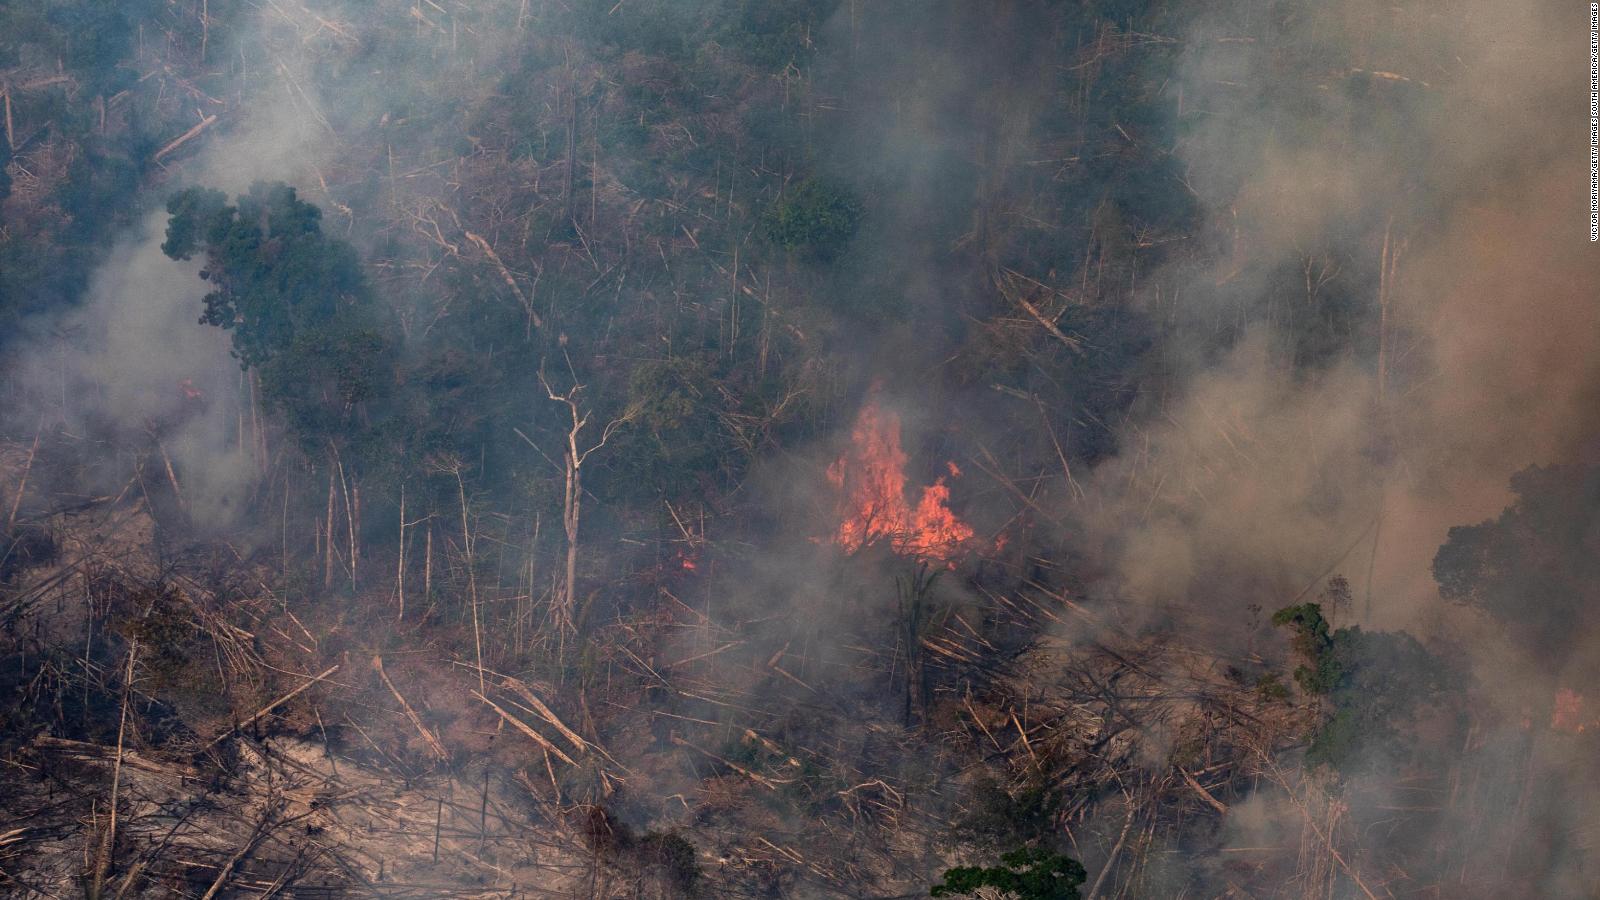 ¿Qué tres efectos tendrían los incendios en el Amazonas?